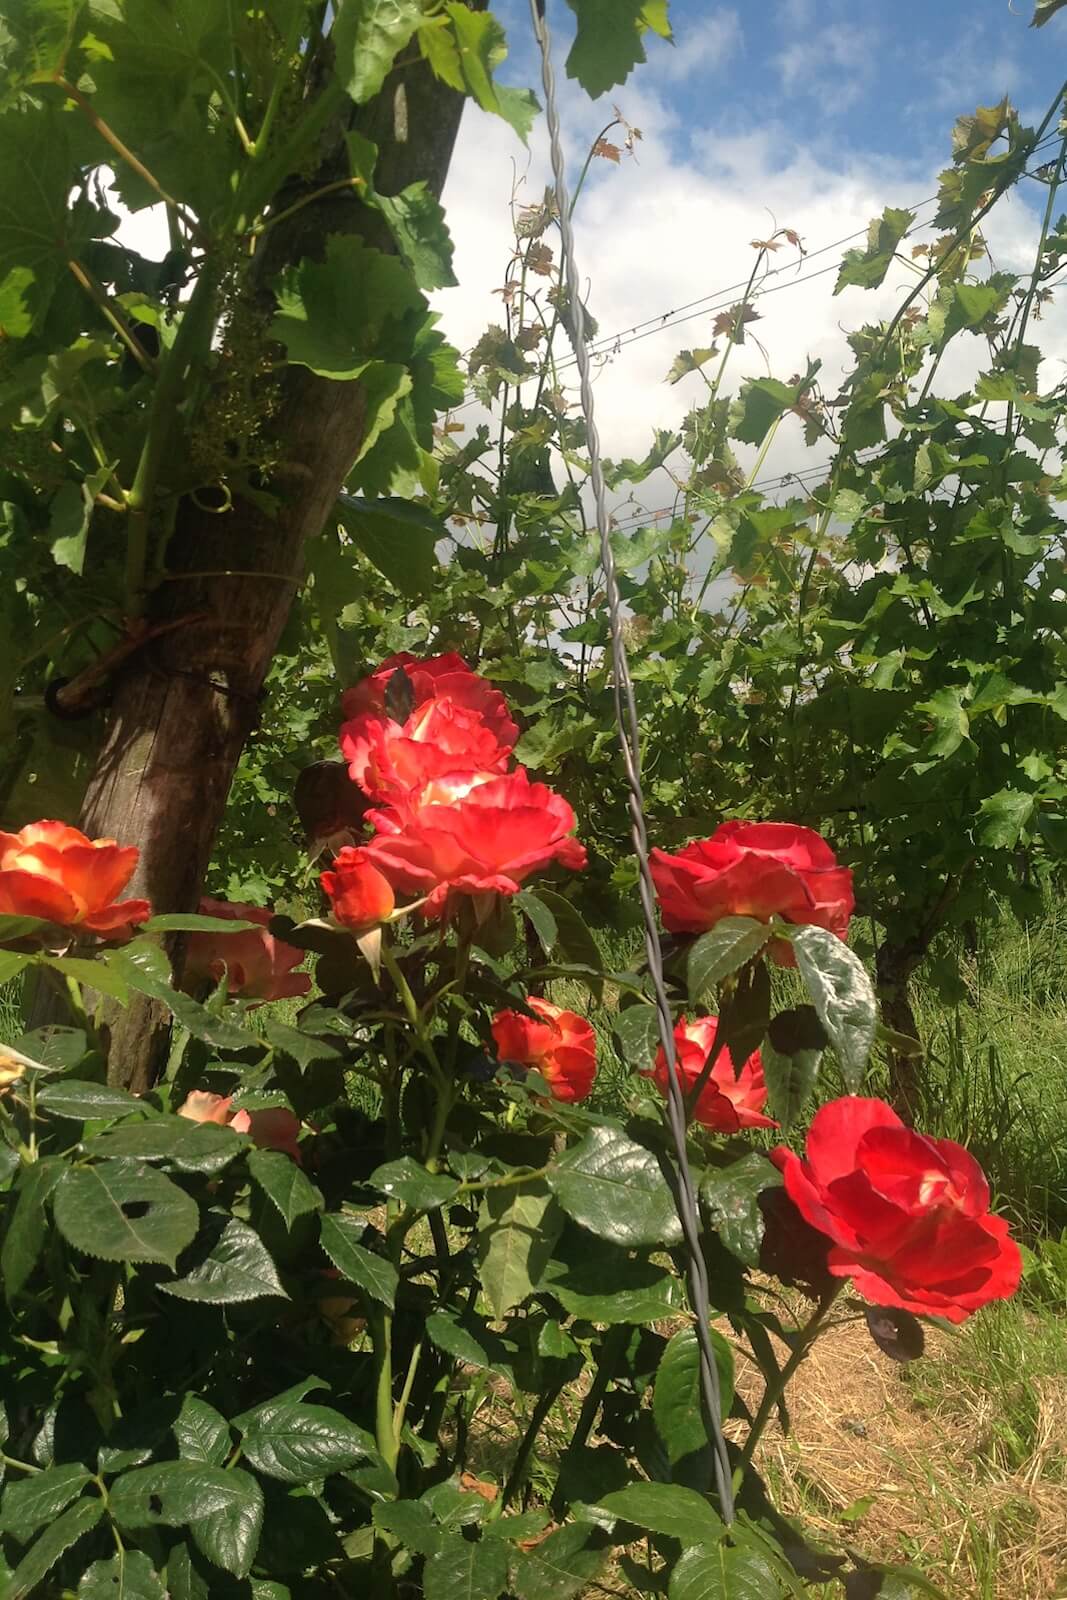 Roses act as early warning of mildew at Wijnboerderij 't Heekenbroek